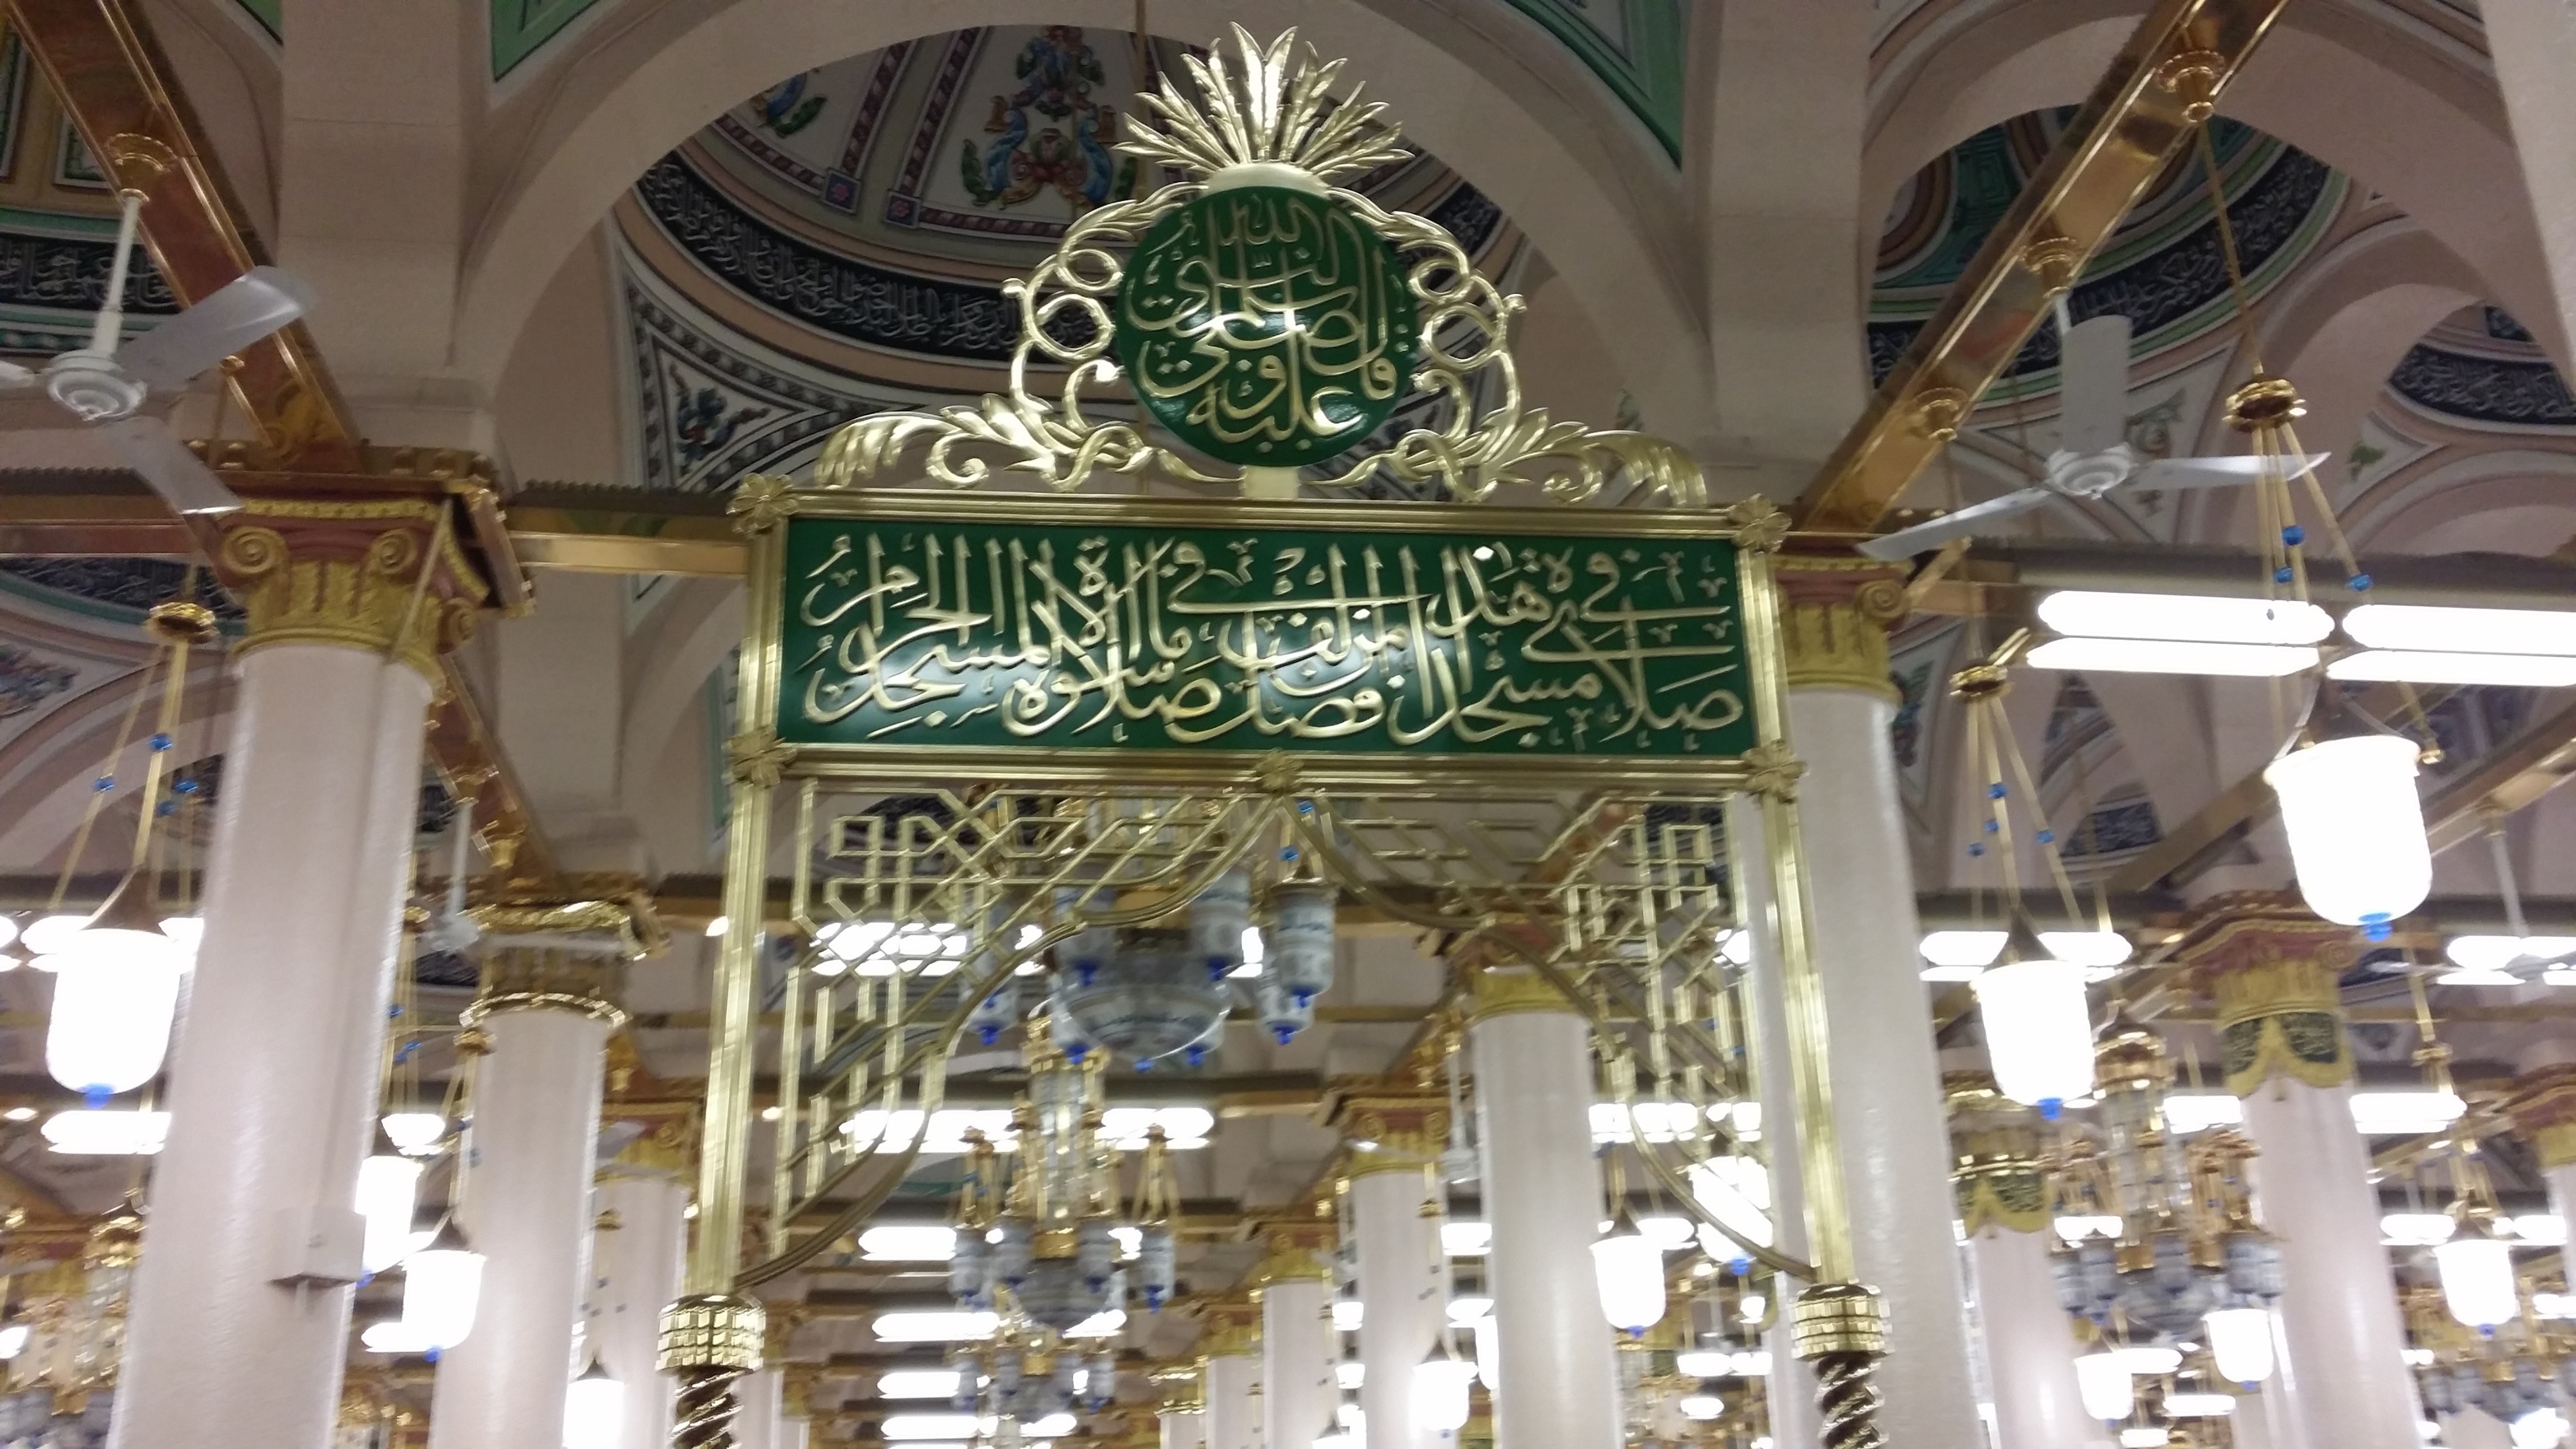 Grand Masjid Nabawi inside hadith Madinah